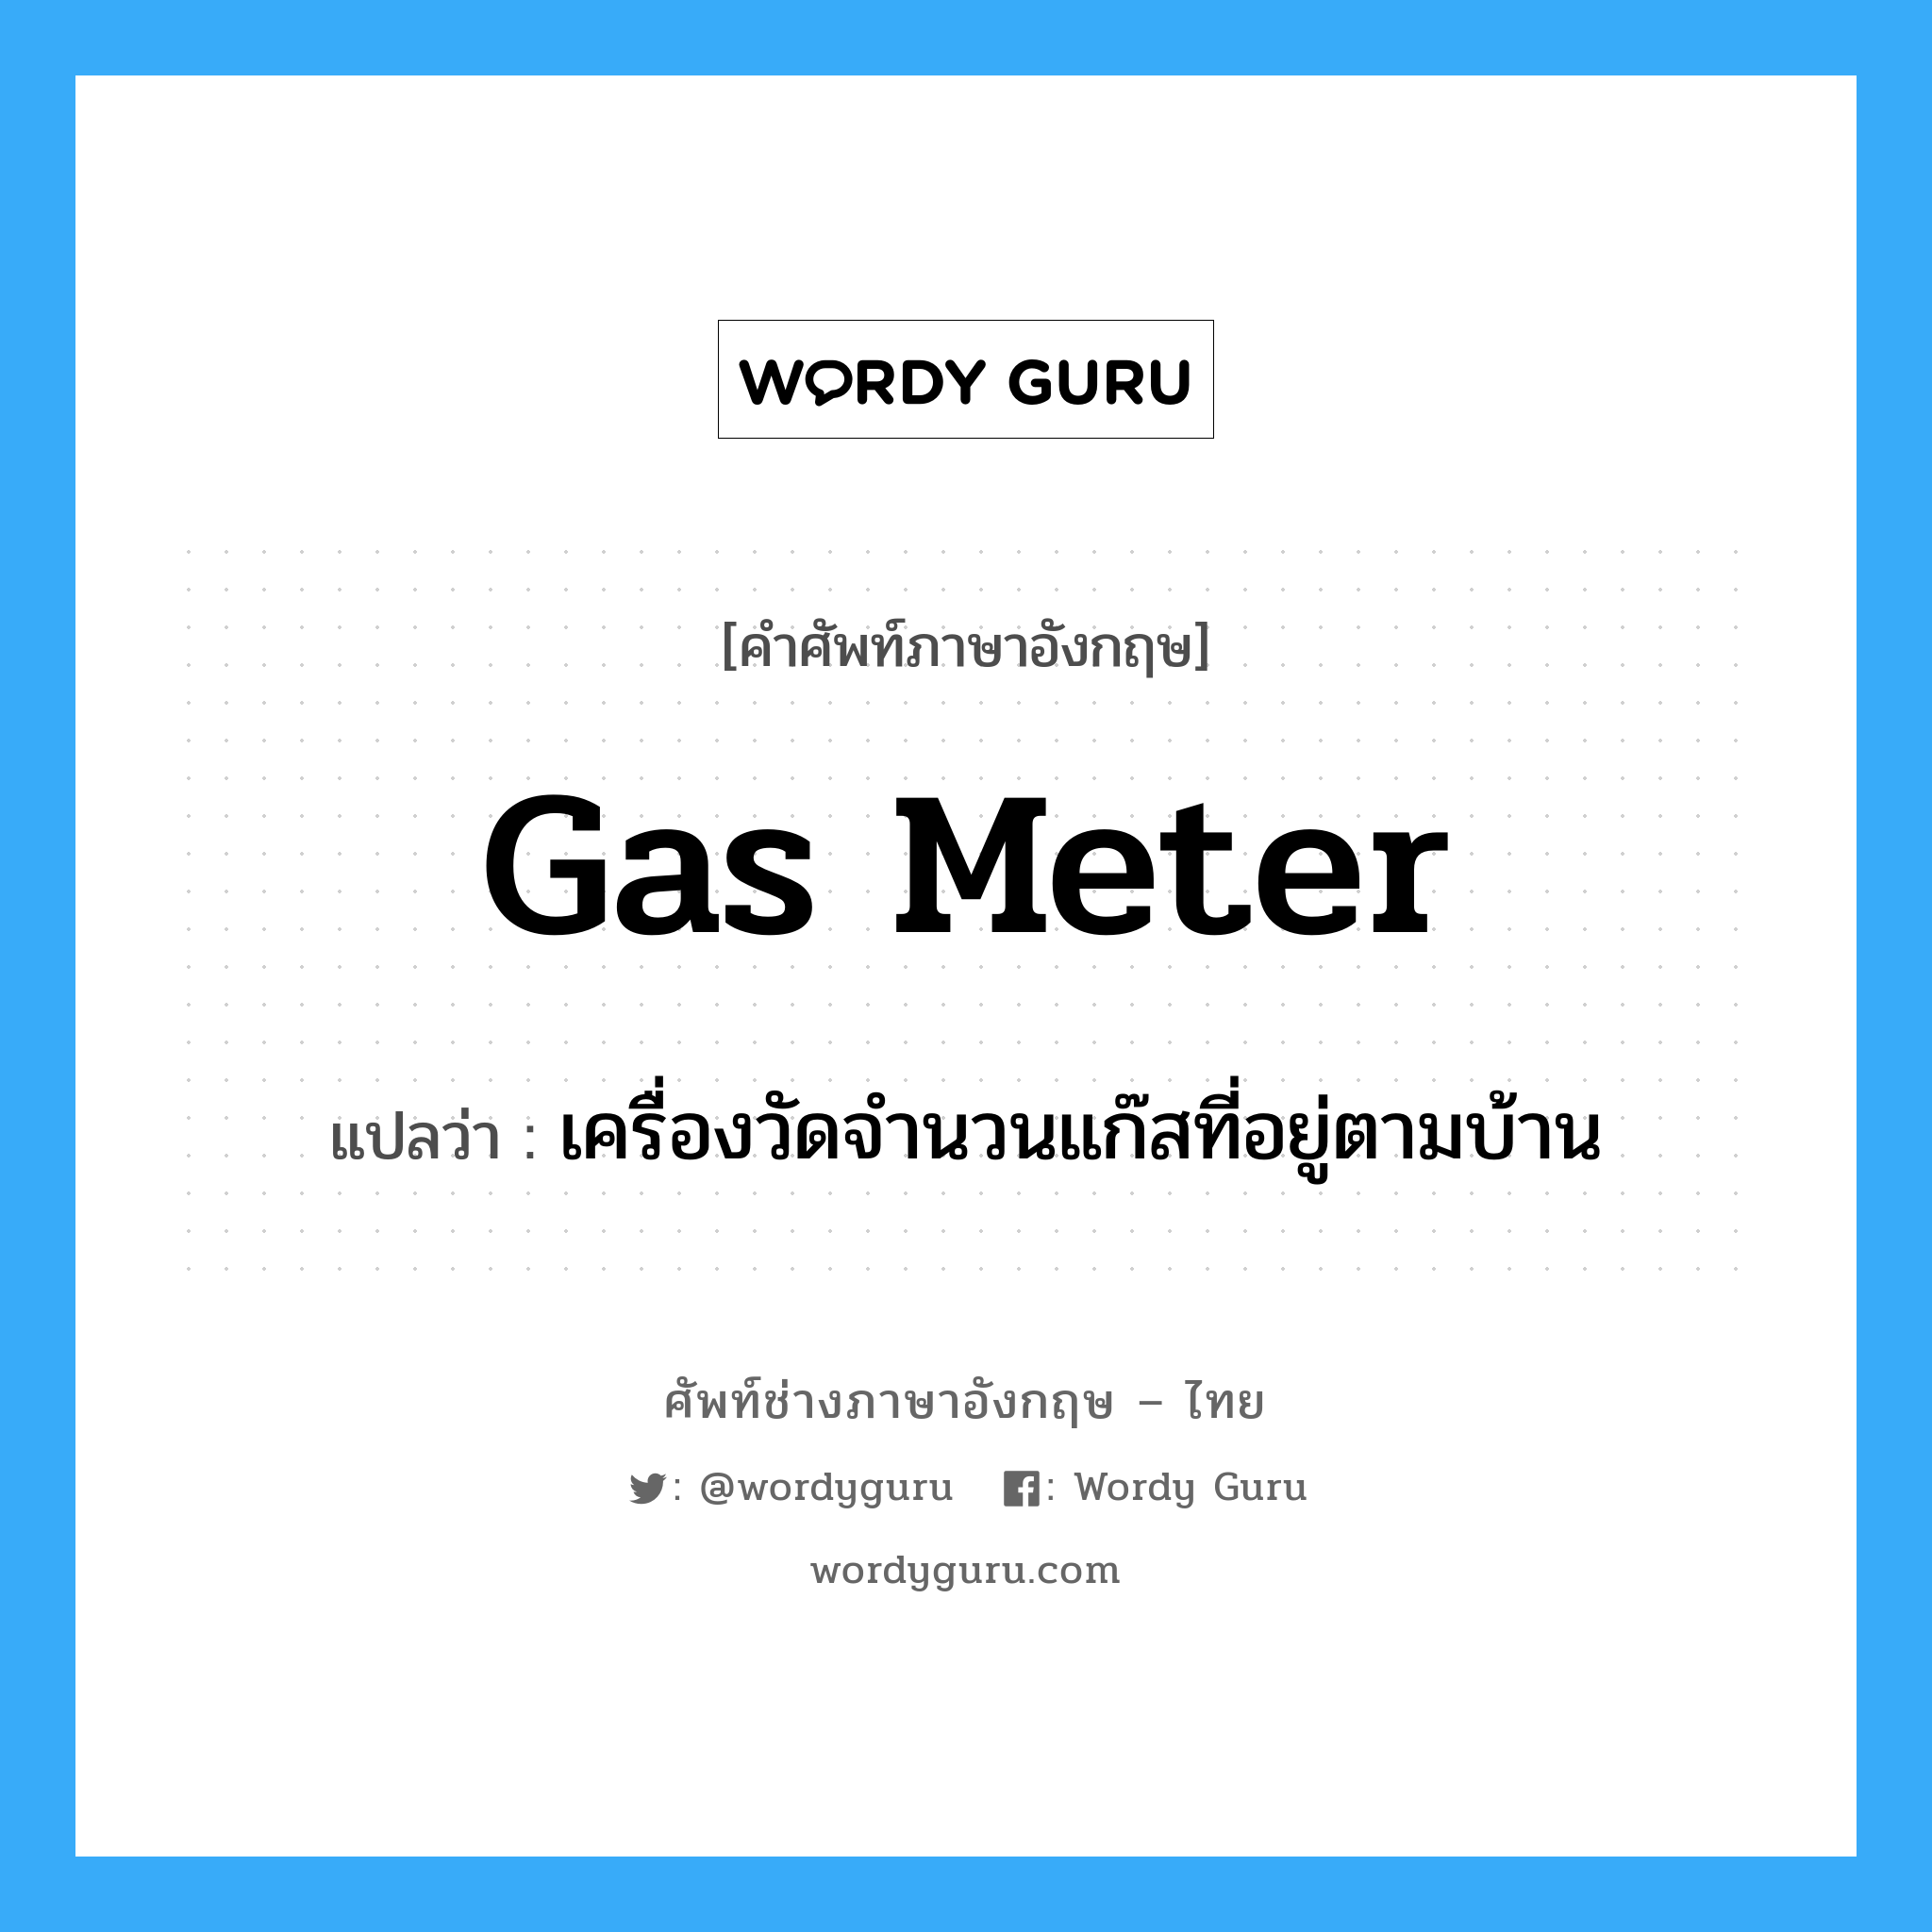 เครื่องวัดจำนวนแก๊สที่อยู่ตามบ้าน ภาษาอังกฤษ?, คำศัพท์ช่างภาษาอังกฤษ - ไทย เครื่องวัดจำนวนแก๊สที่อยู่ตามบ้าน คำศัพท์ภาษาอังกฤษ เครื่องวัดจำนวนแก๊สที่อยู่ตามบ้าน แปลว่า gas meter